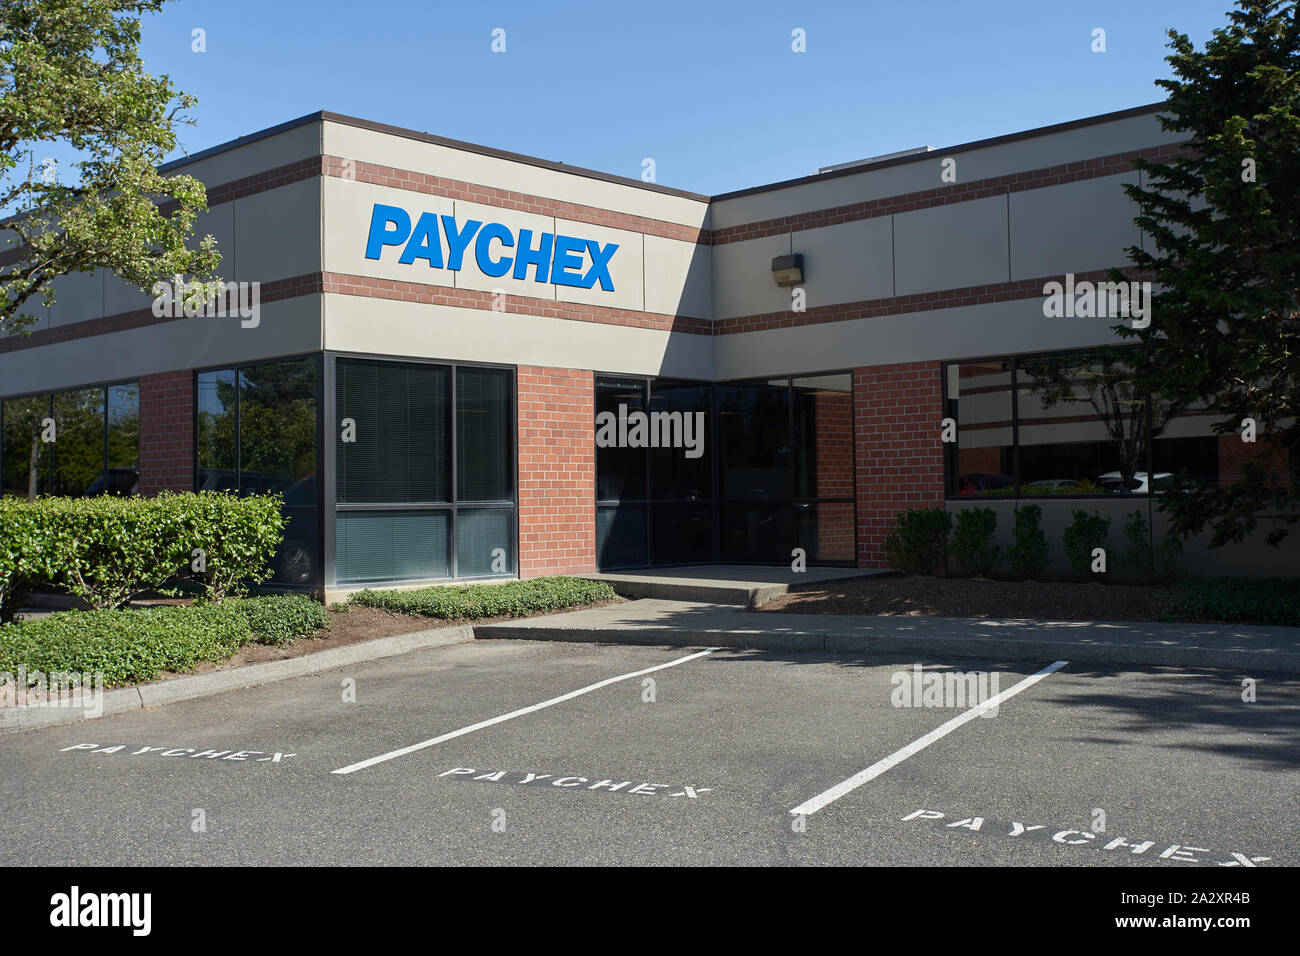 Bureau DE PAYCHEX à Beaverton, Oregon, le vendredi 8 mai 2019. Paychex est un fournisseur américain de services de paie, de ressources humaines, d'avantages sociaux. Banque D'Images